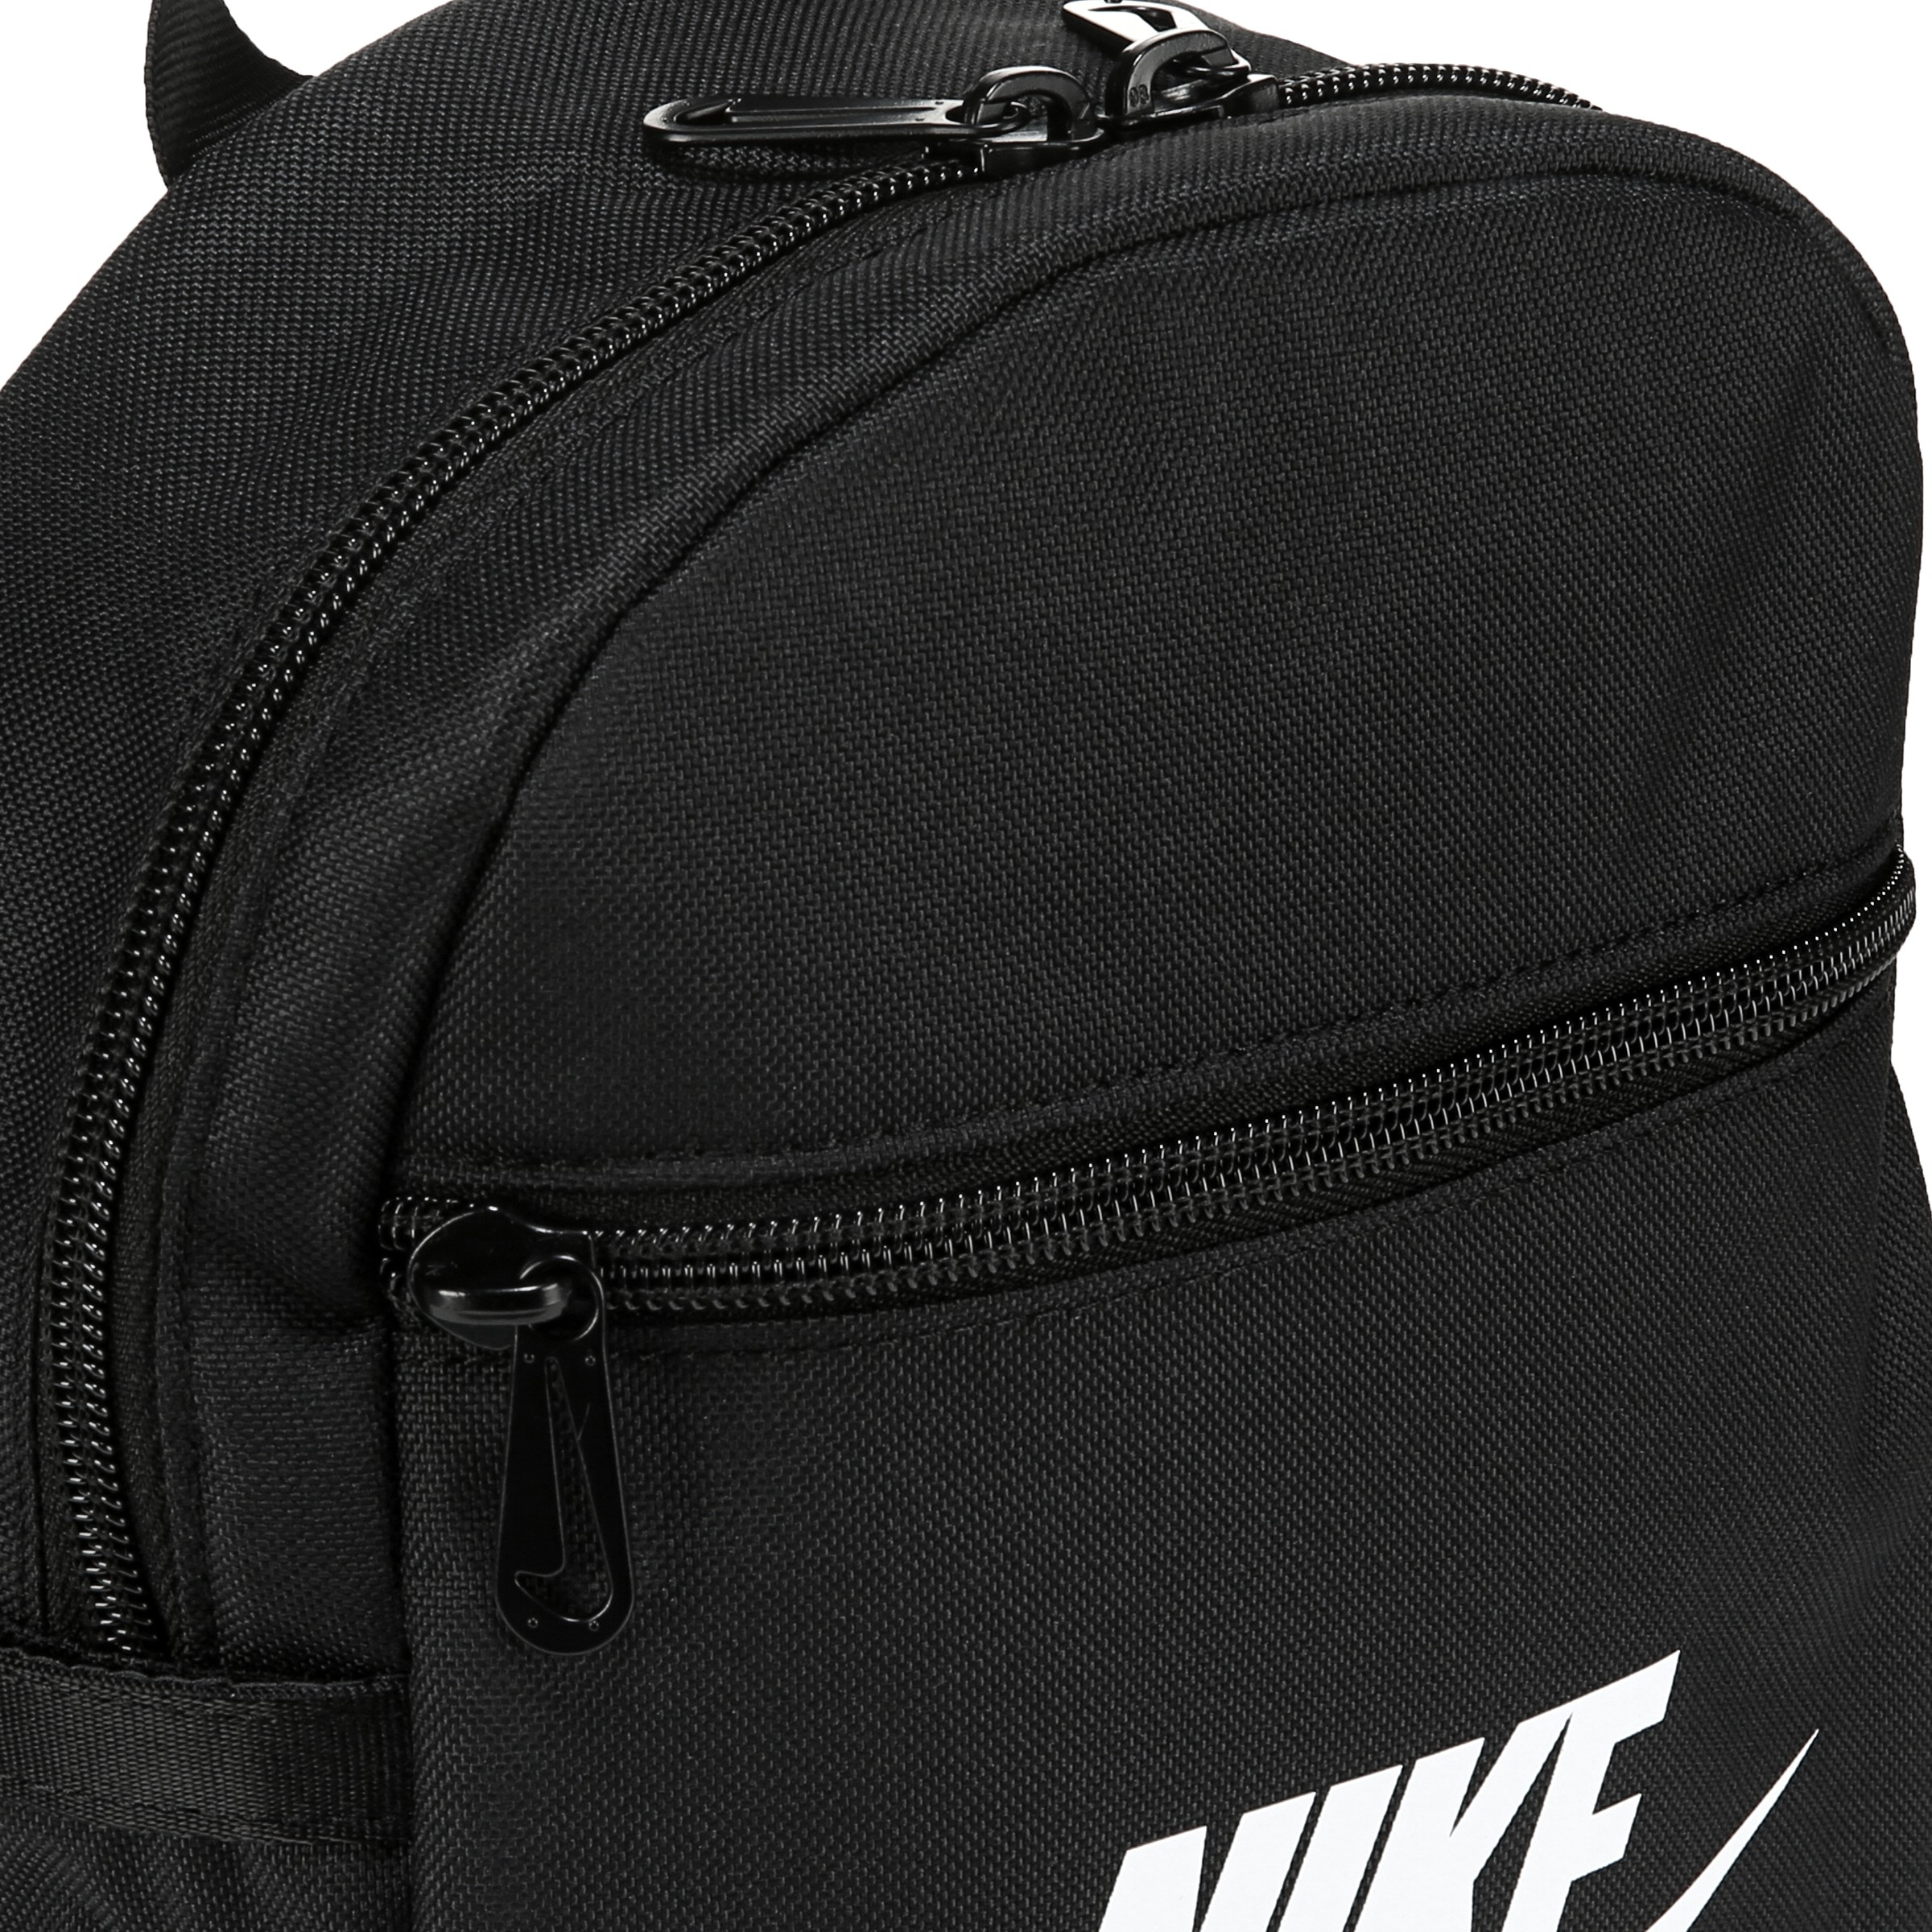  Nike Futura 365 Mini Velour Unisex Backpacks Size OS, Color:  Onyx Black/Core Black-Black (DC7707)